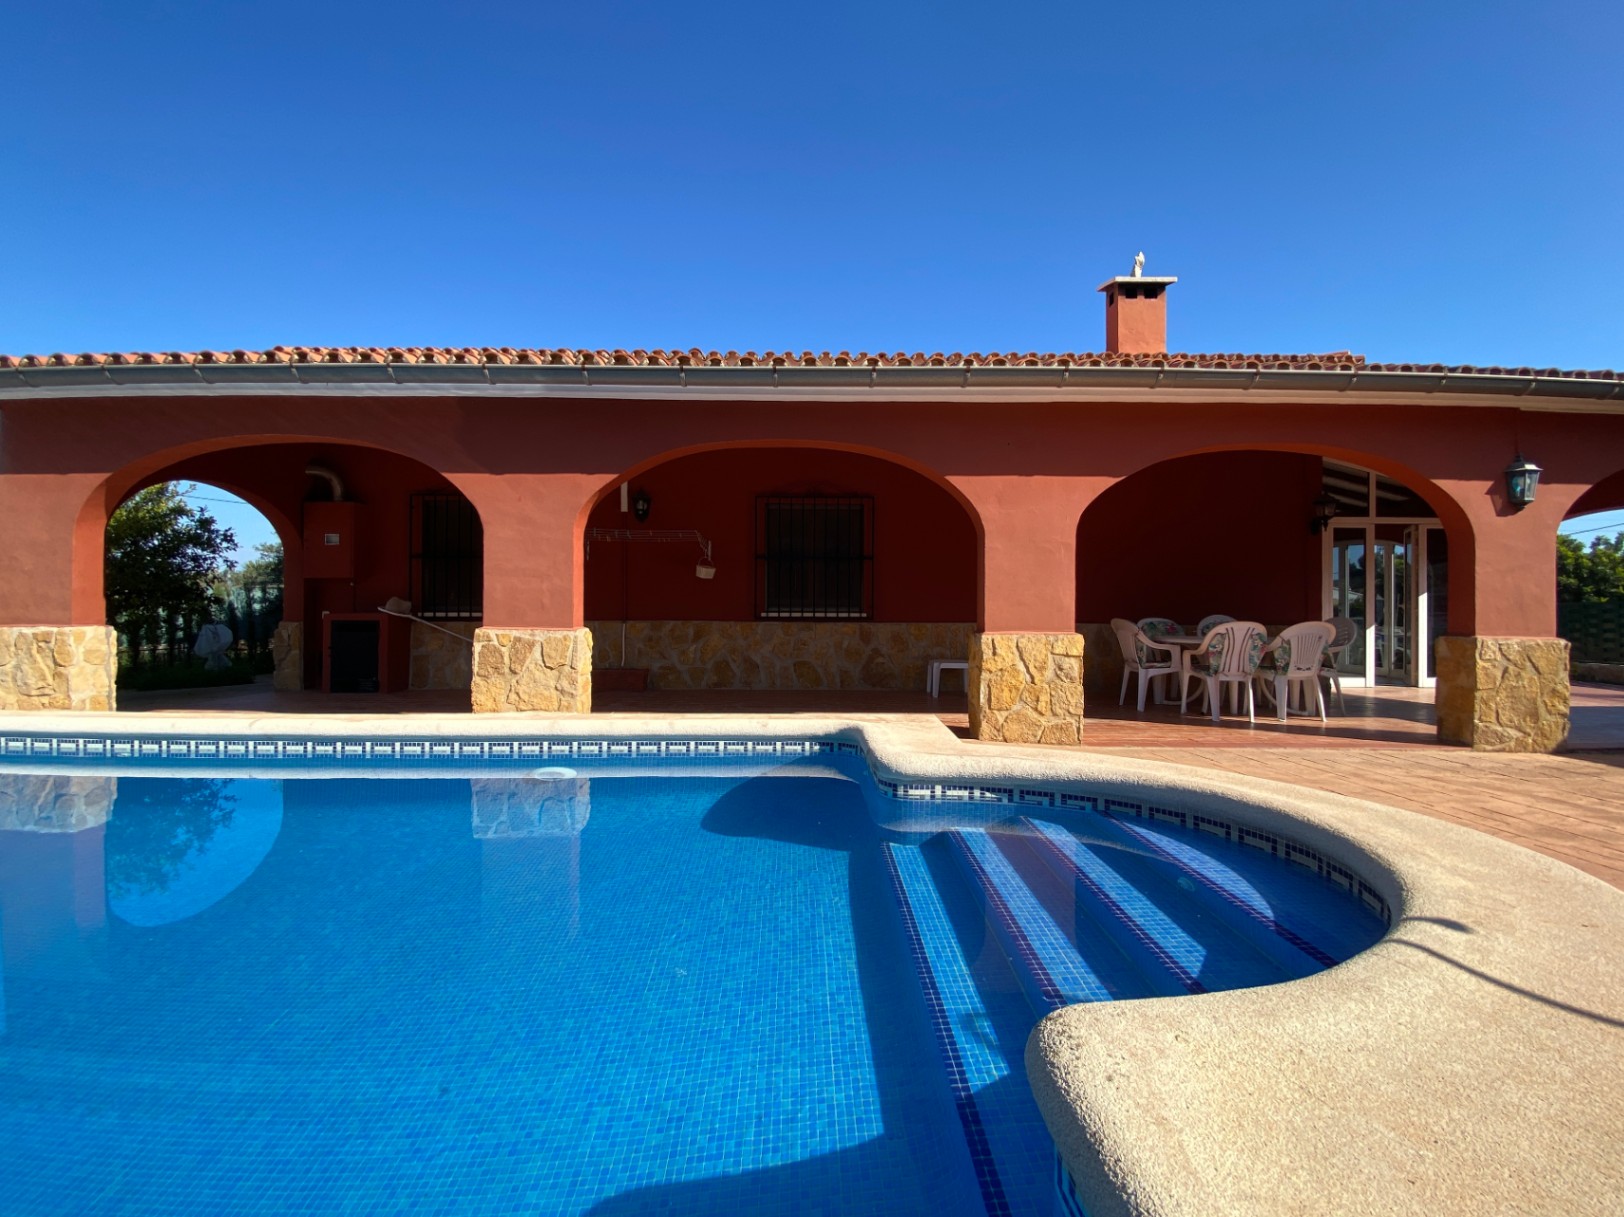 Schöne Finca im spanischen Stil mit Pool, BB, Garage, Carport, Klimaanlage, in der Nähe der Stadt.